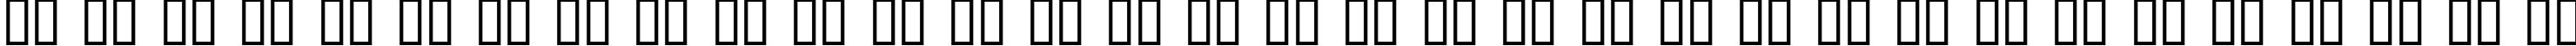 Пример написания русского алфавита шрифтом Express